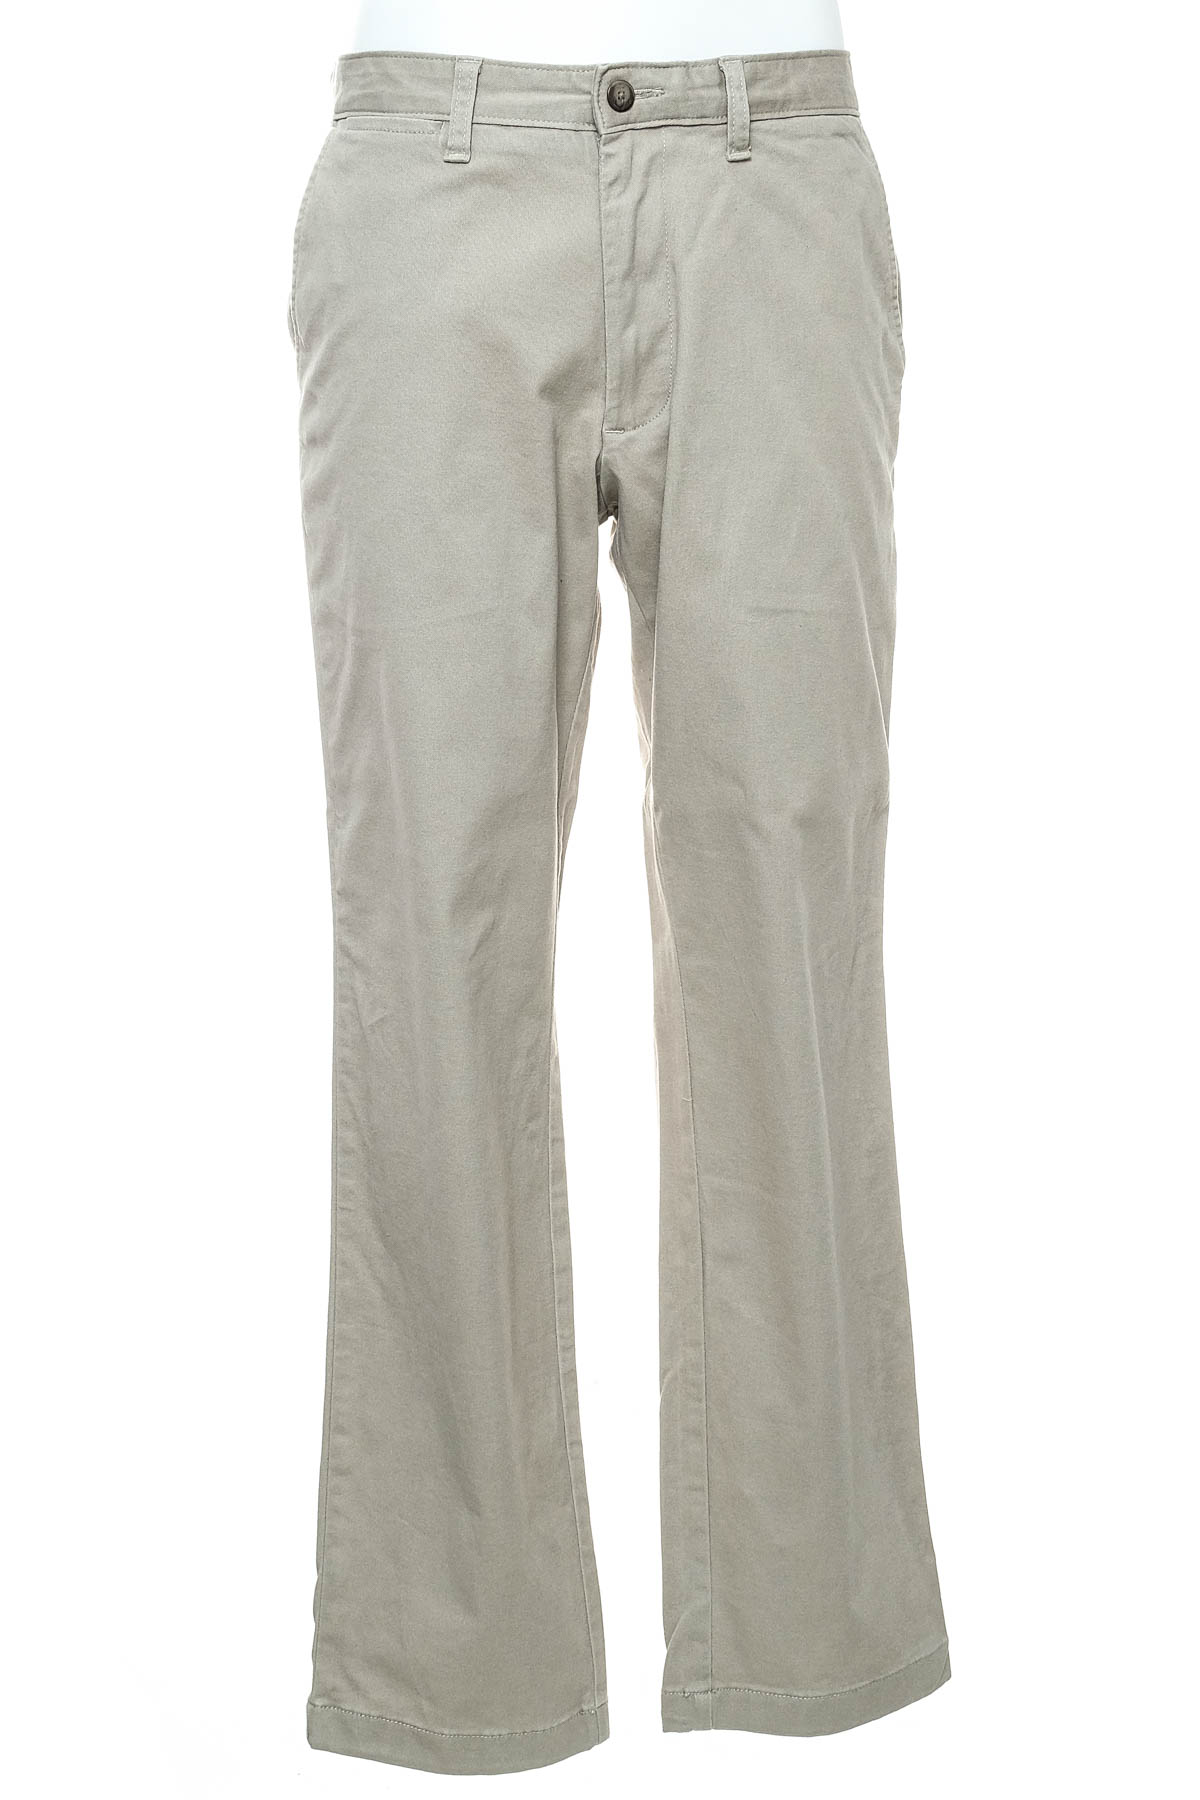 Pantalon pentru bărbați - Nautica - 0